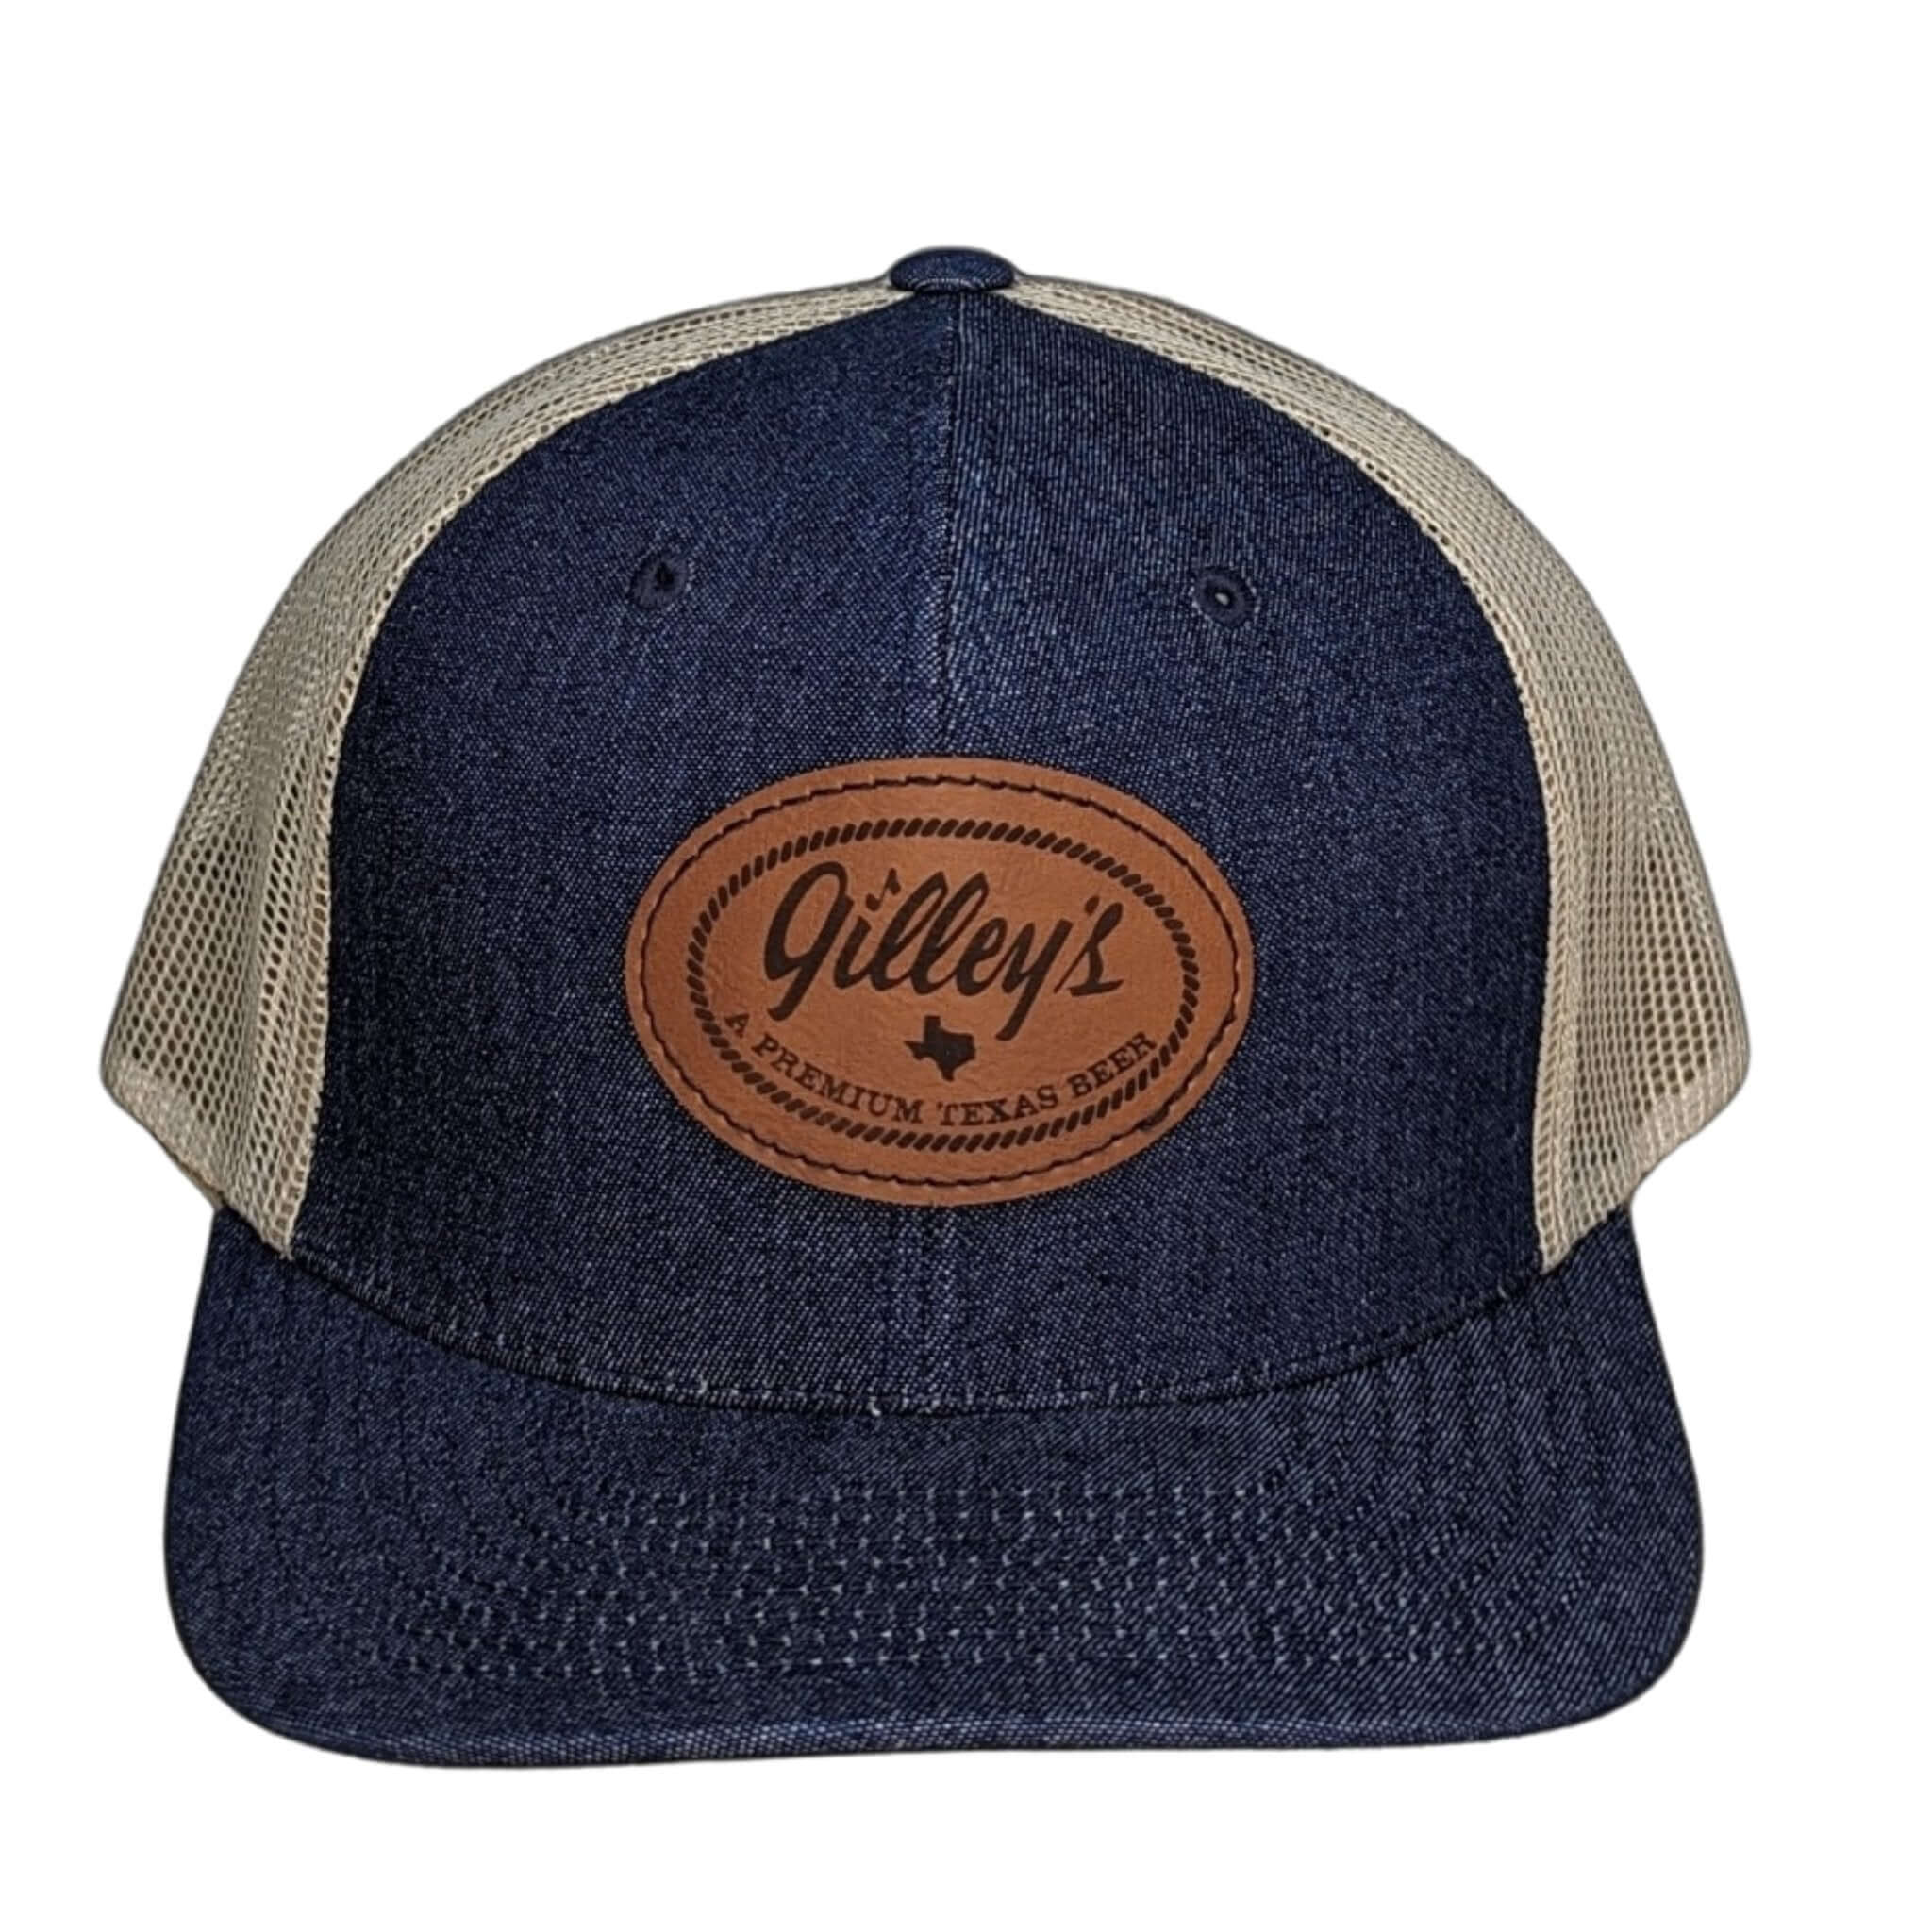 Gilley's Premium Texas Beer Denim Trucker Hat - Gilley's Food & Beverage